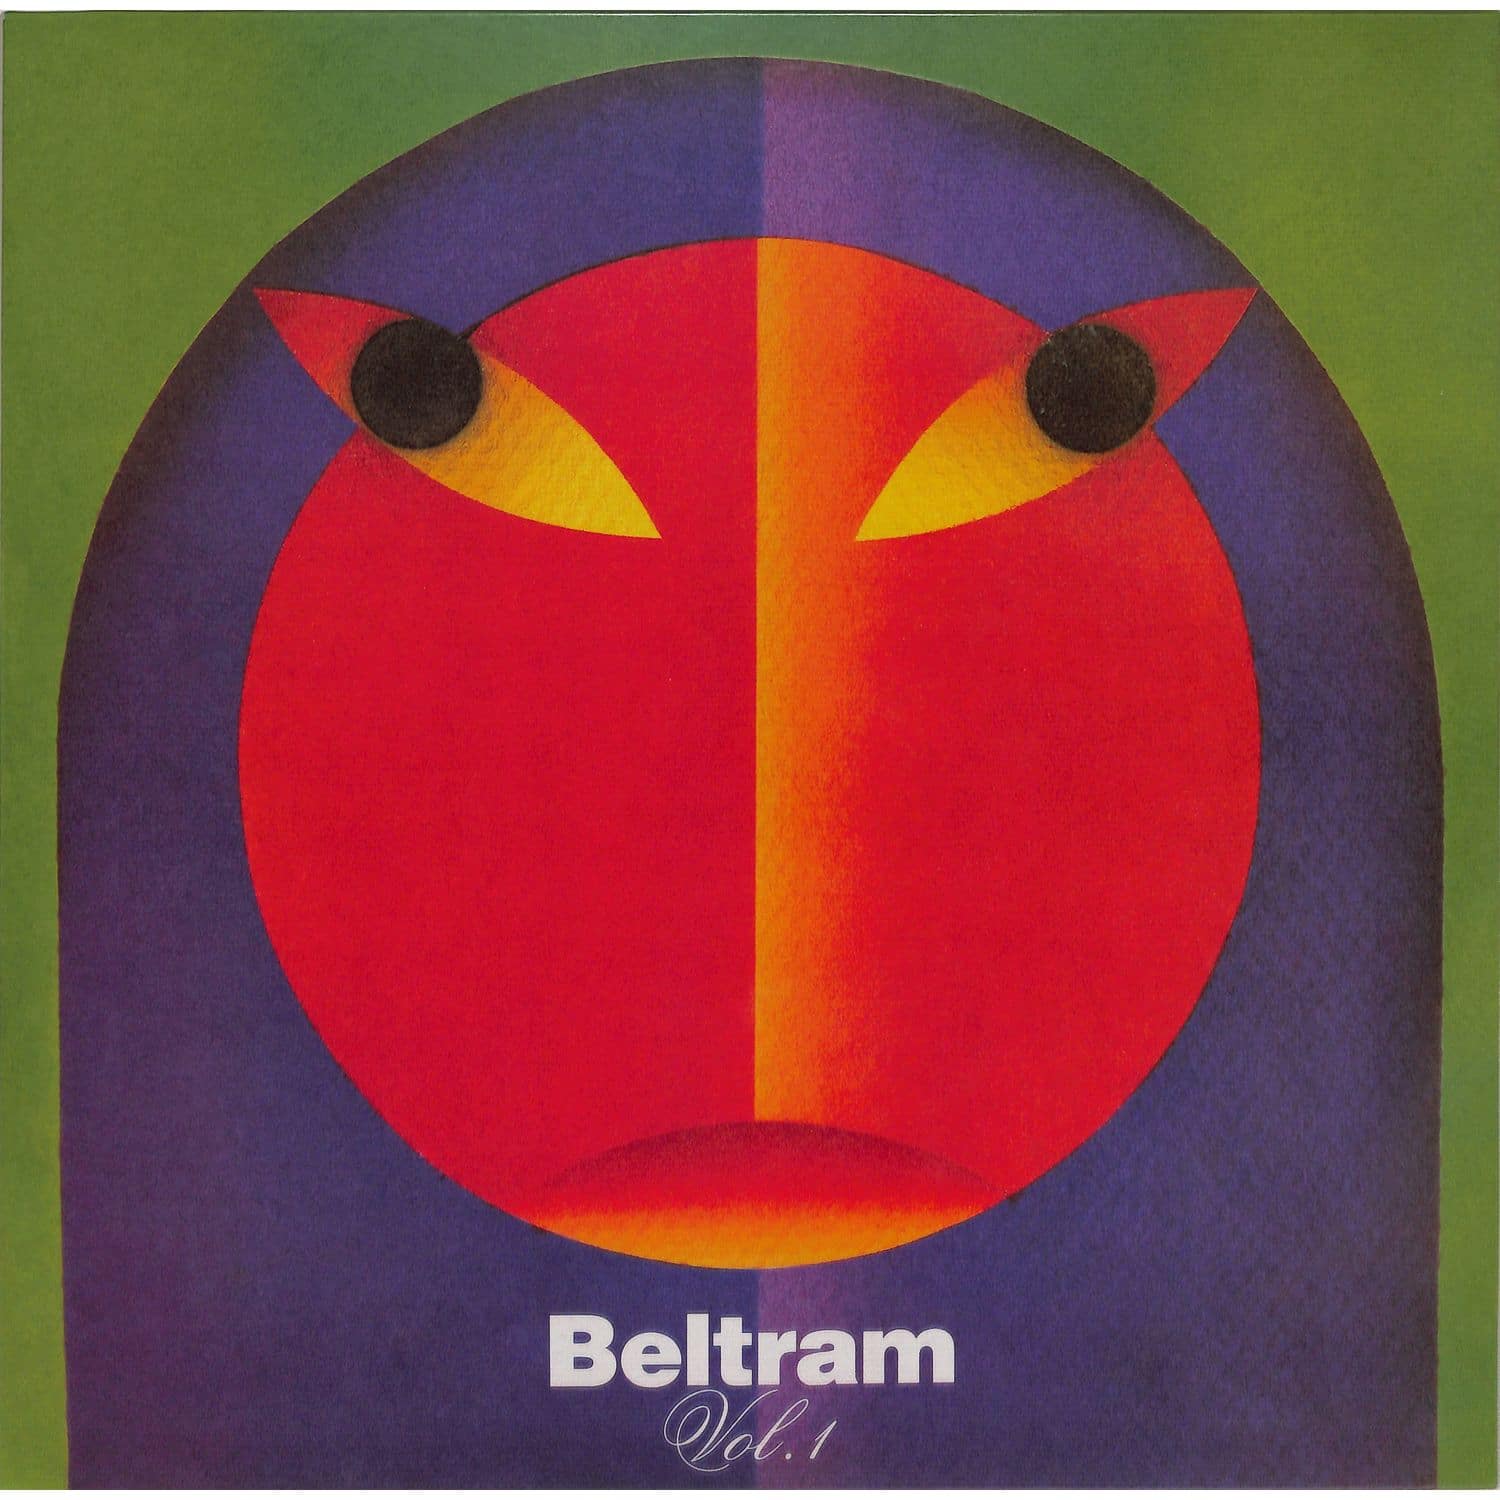 Joey Beltram - BELTRAM VOL.1